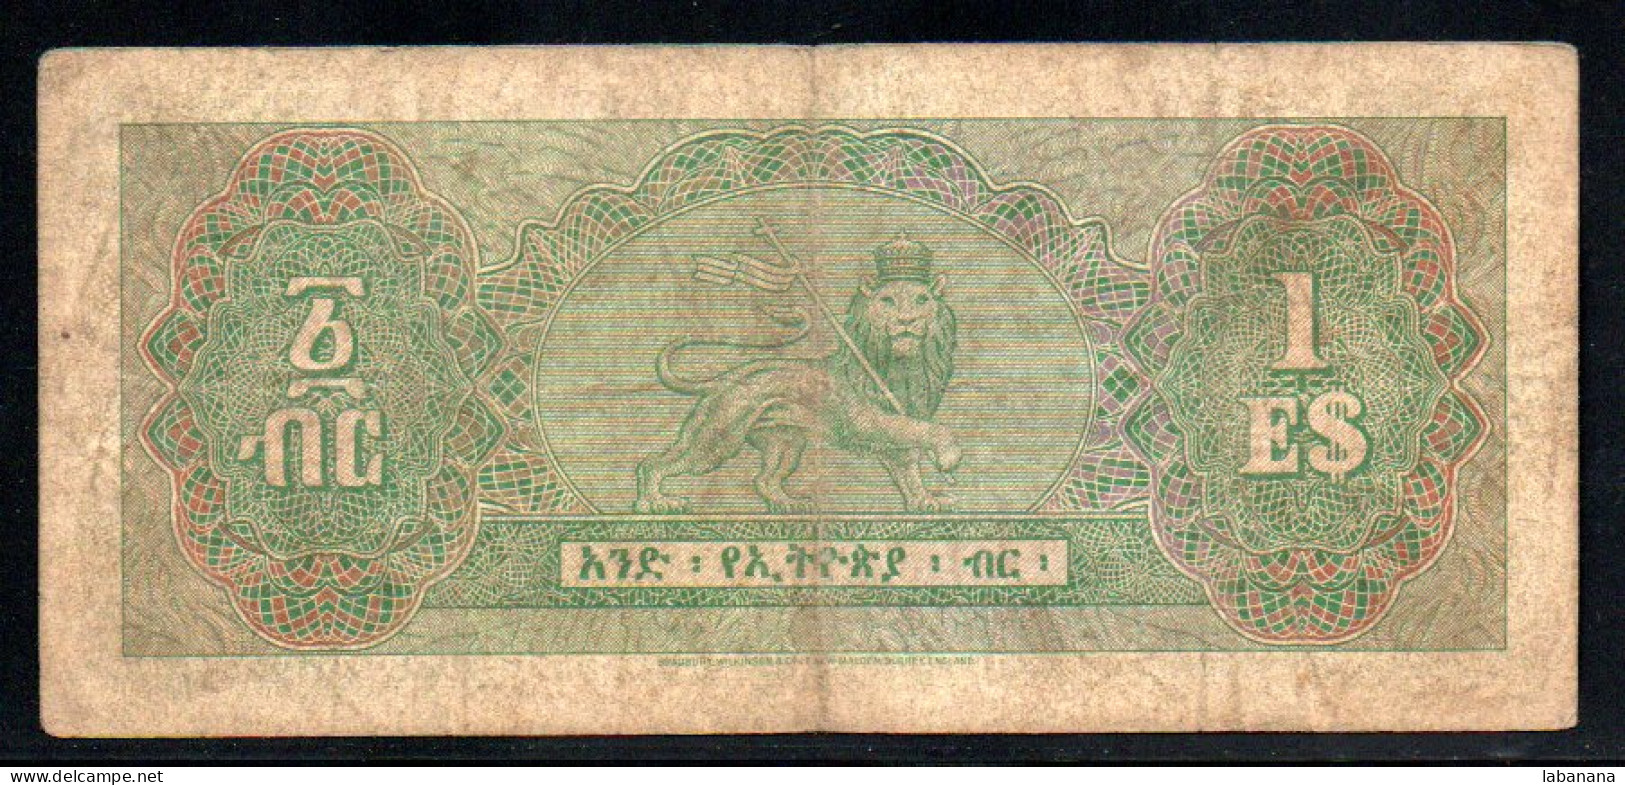 659-Ethiopie 1 Dollar 1961 A55 - Etiopia